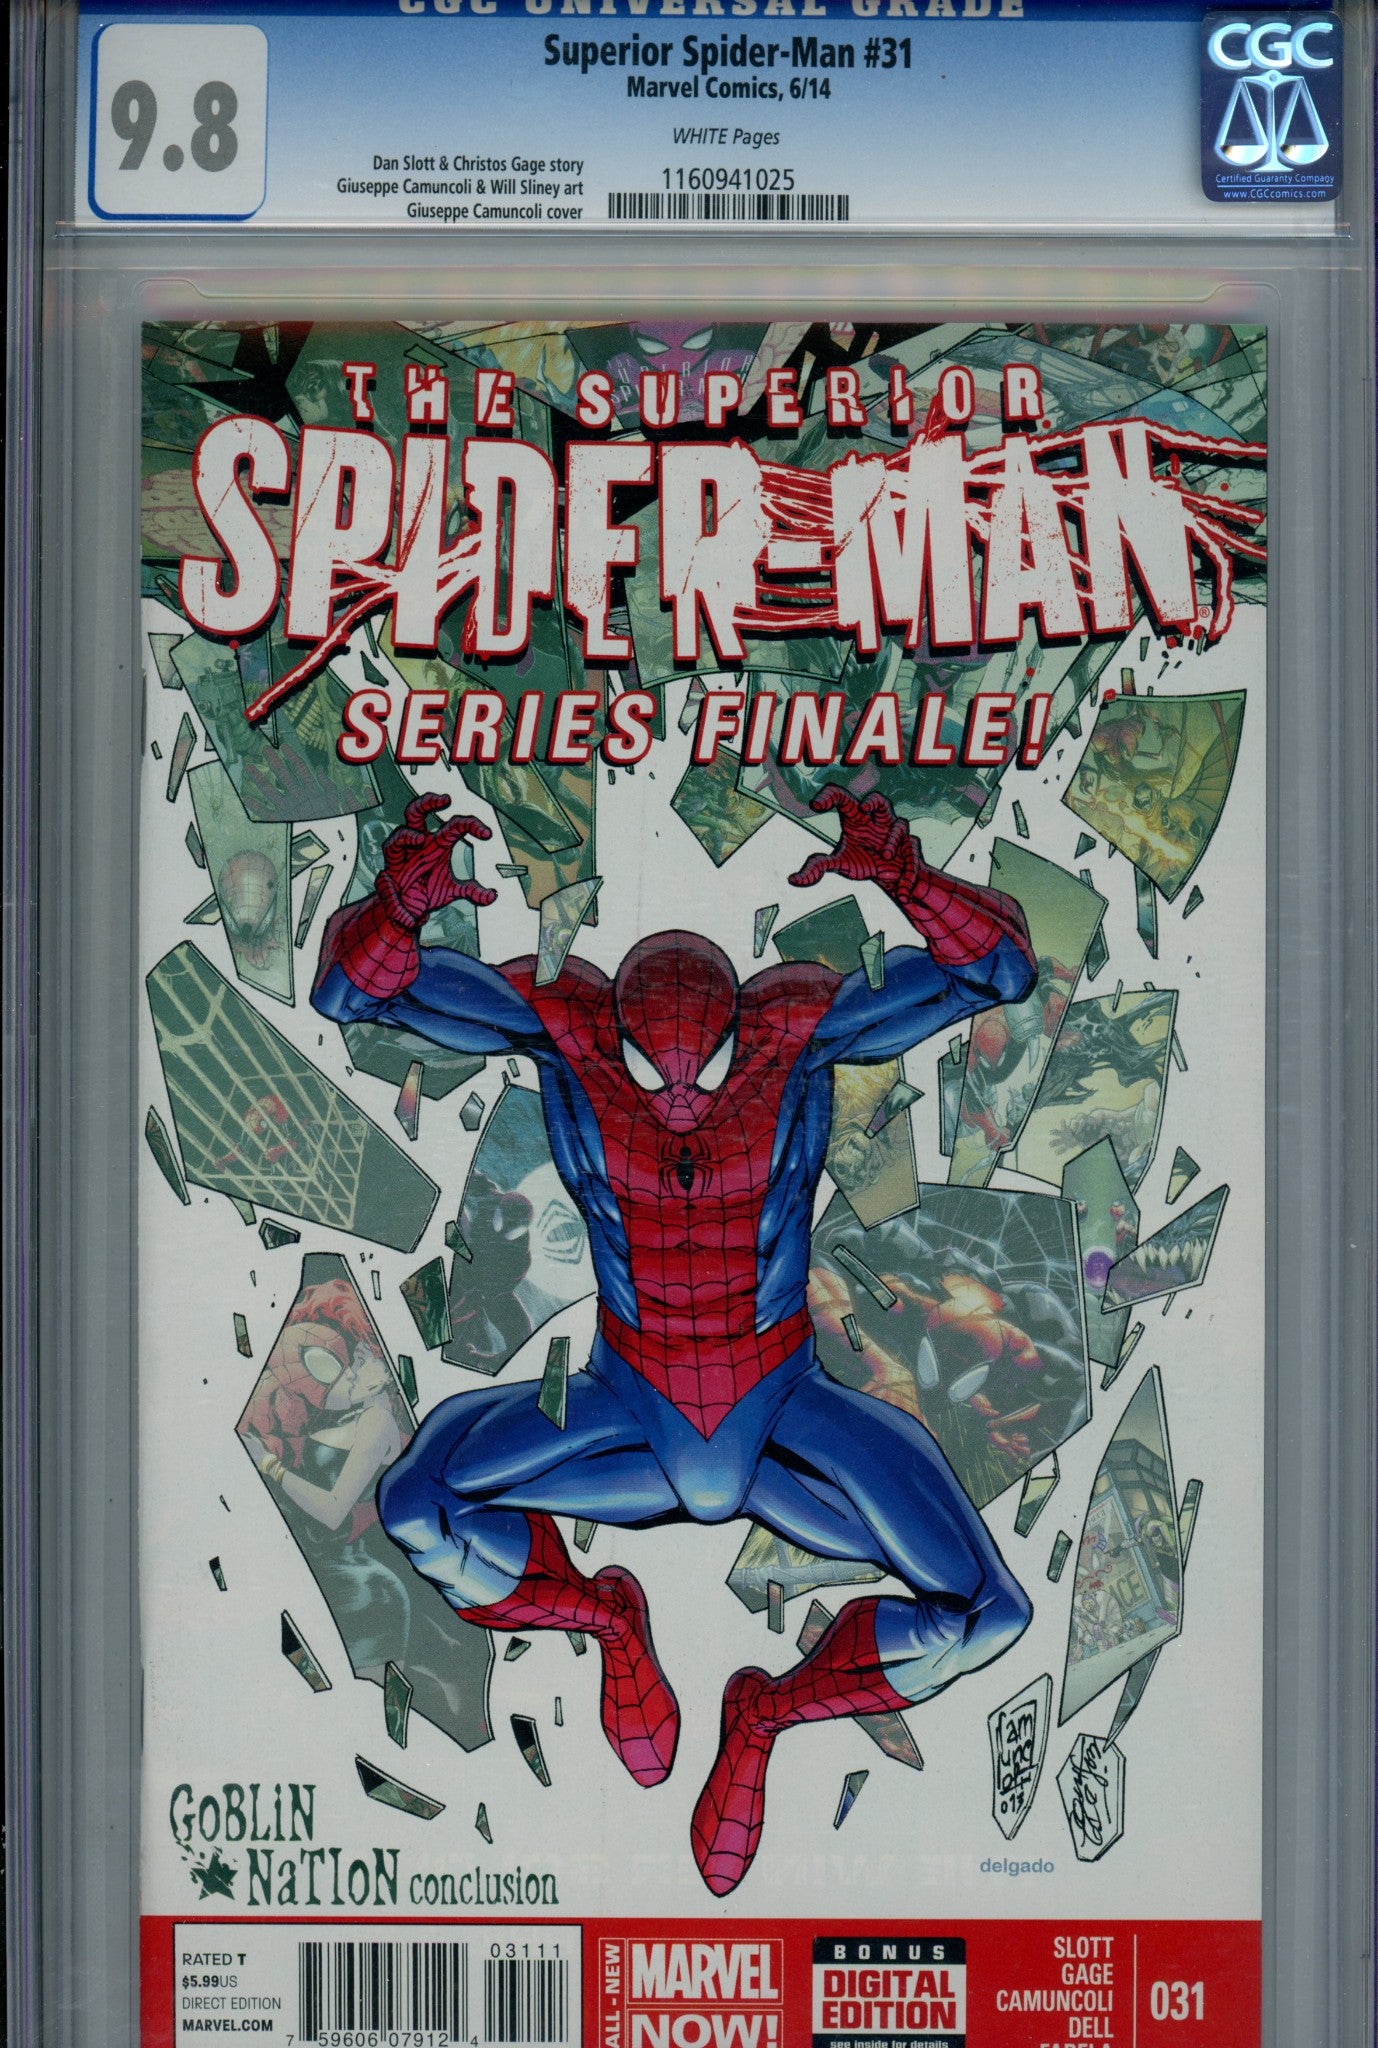 Superior Spider-Man Vol 1 31 CGC 9.8 (NM/M) (2014) 